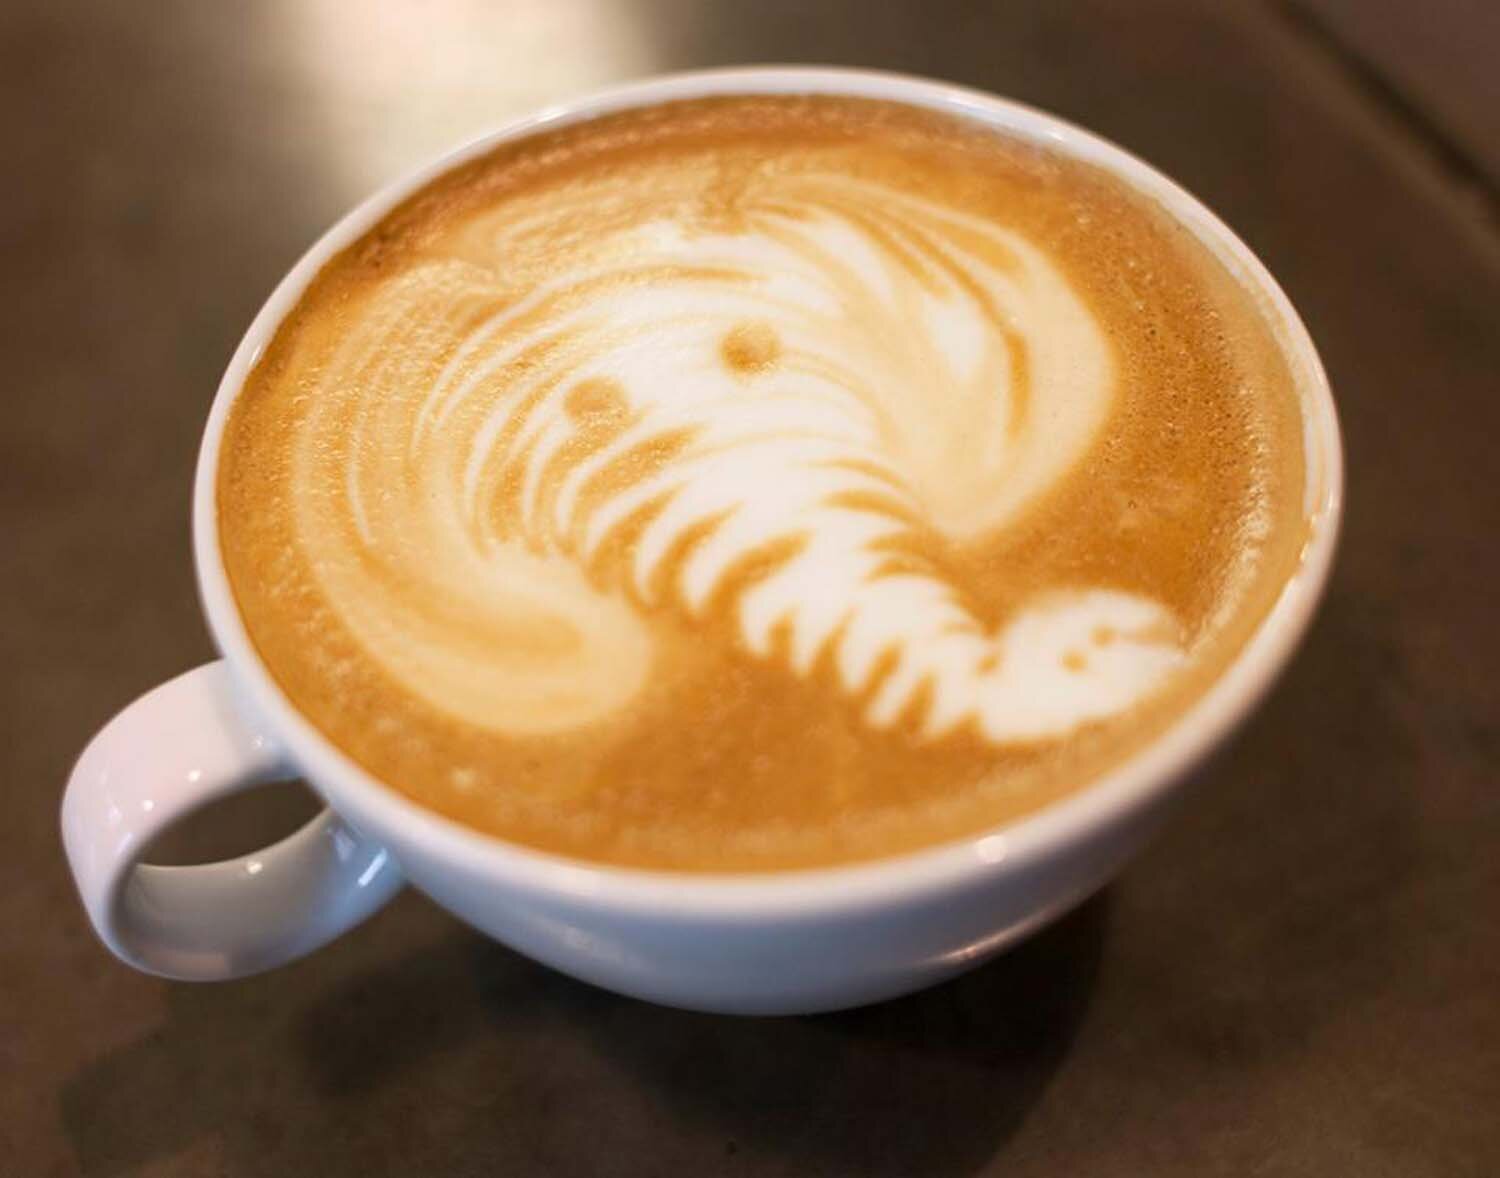 Cassia's latte art, poured elephant.